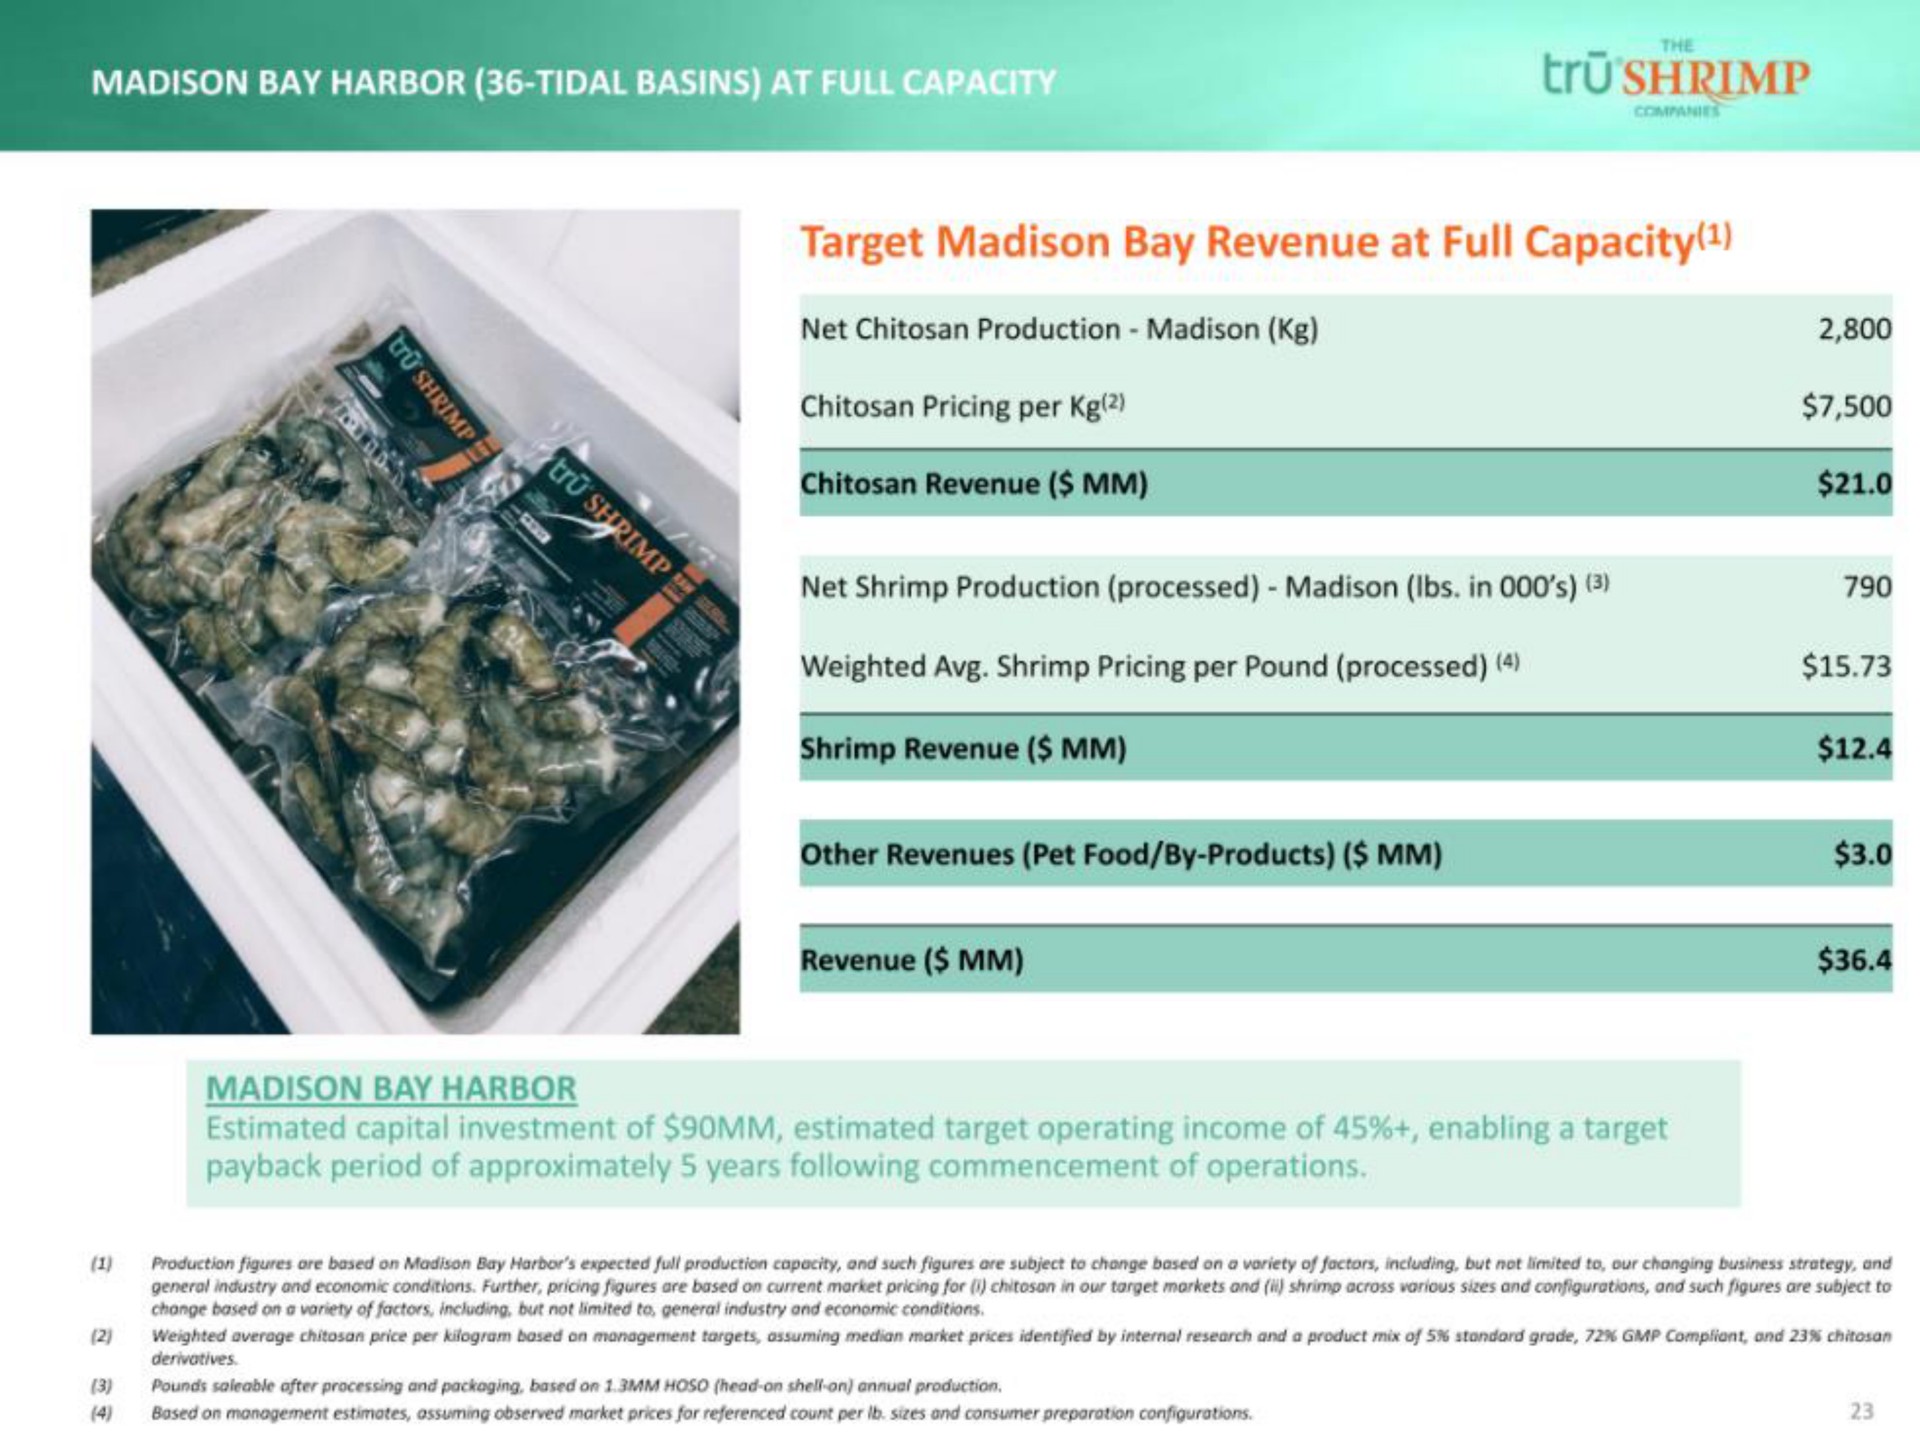 bay harbor tidal basins target bay revenue at full capacity | tru Shrimp